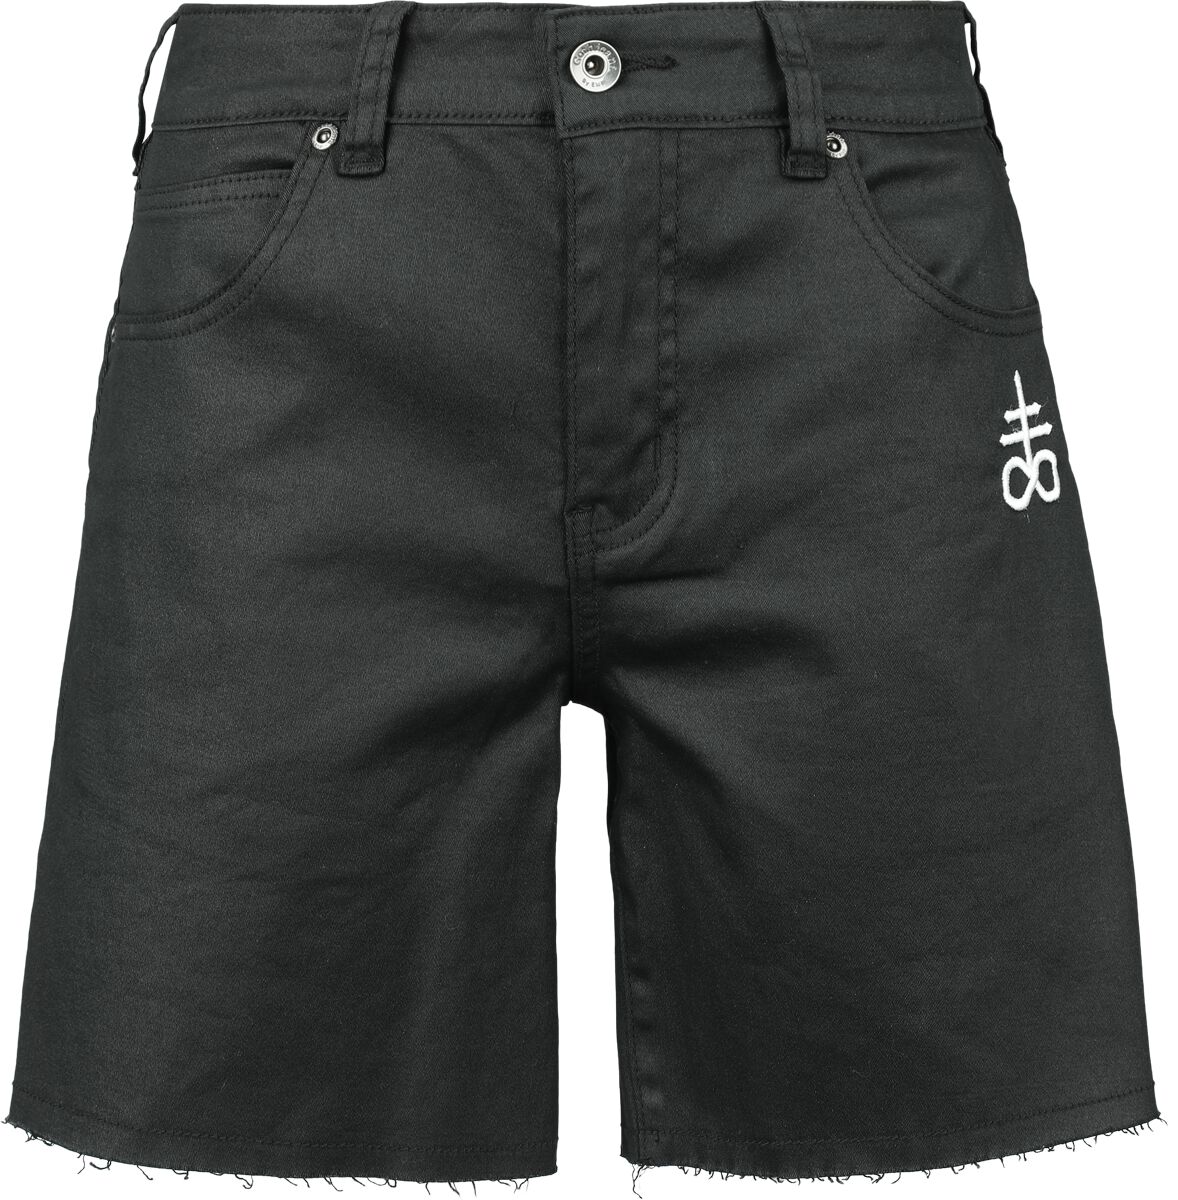 Black Blood by Gothicana - Gothic Short - Coated Shorts with Small Embroidery - 27 bis 31 - für Damen - Größe 28 - schwarz